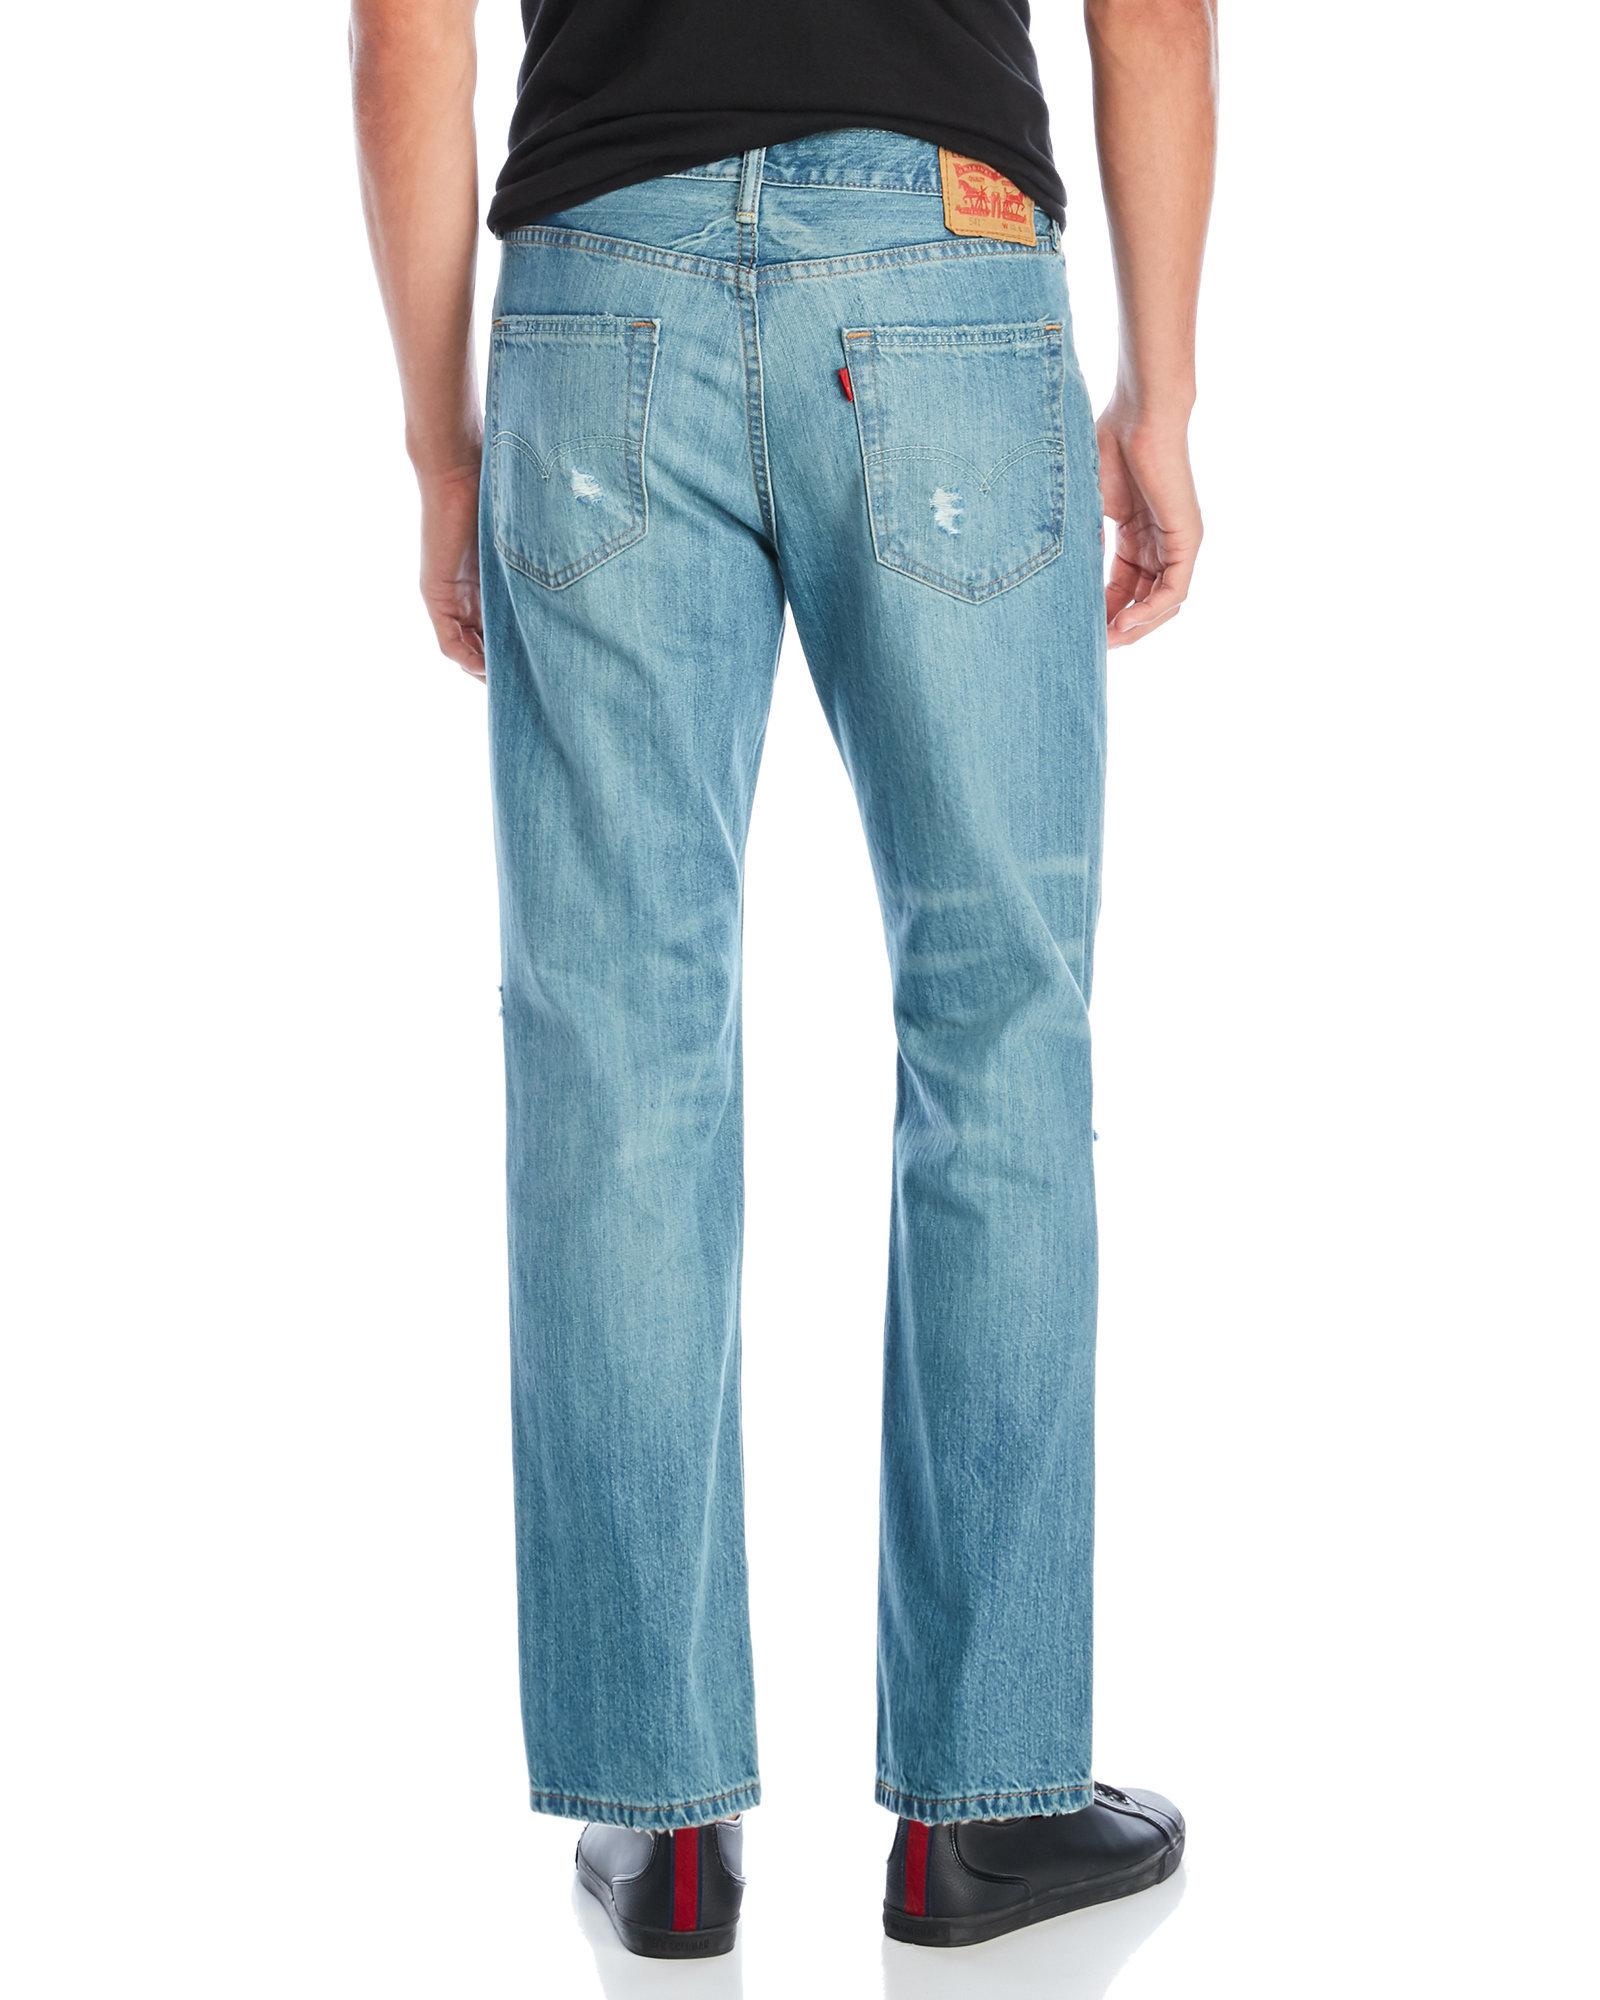 levis 543 jeans